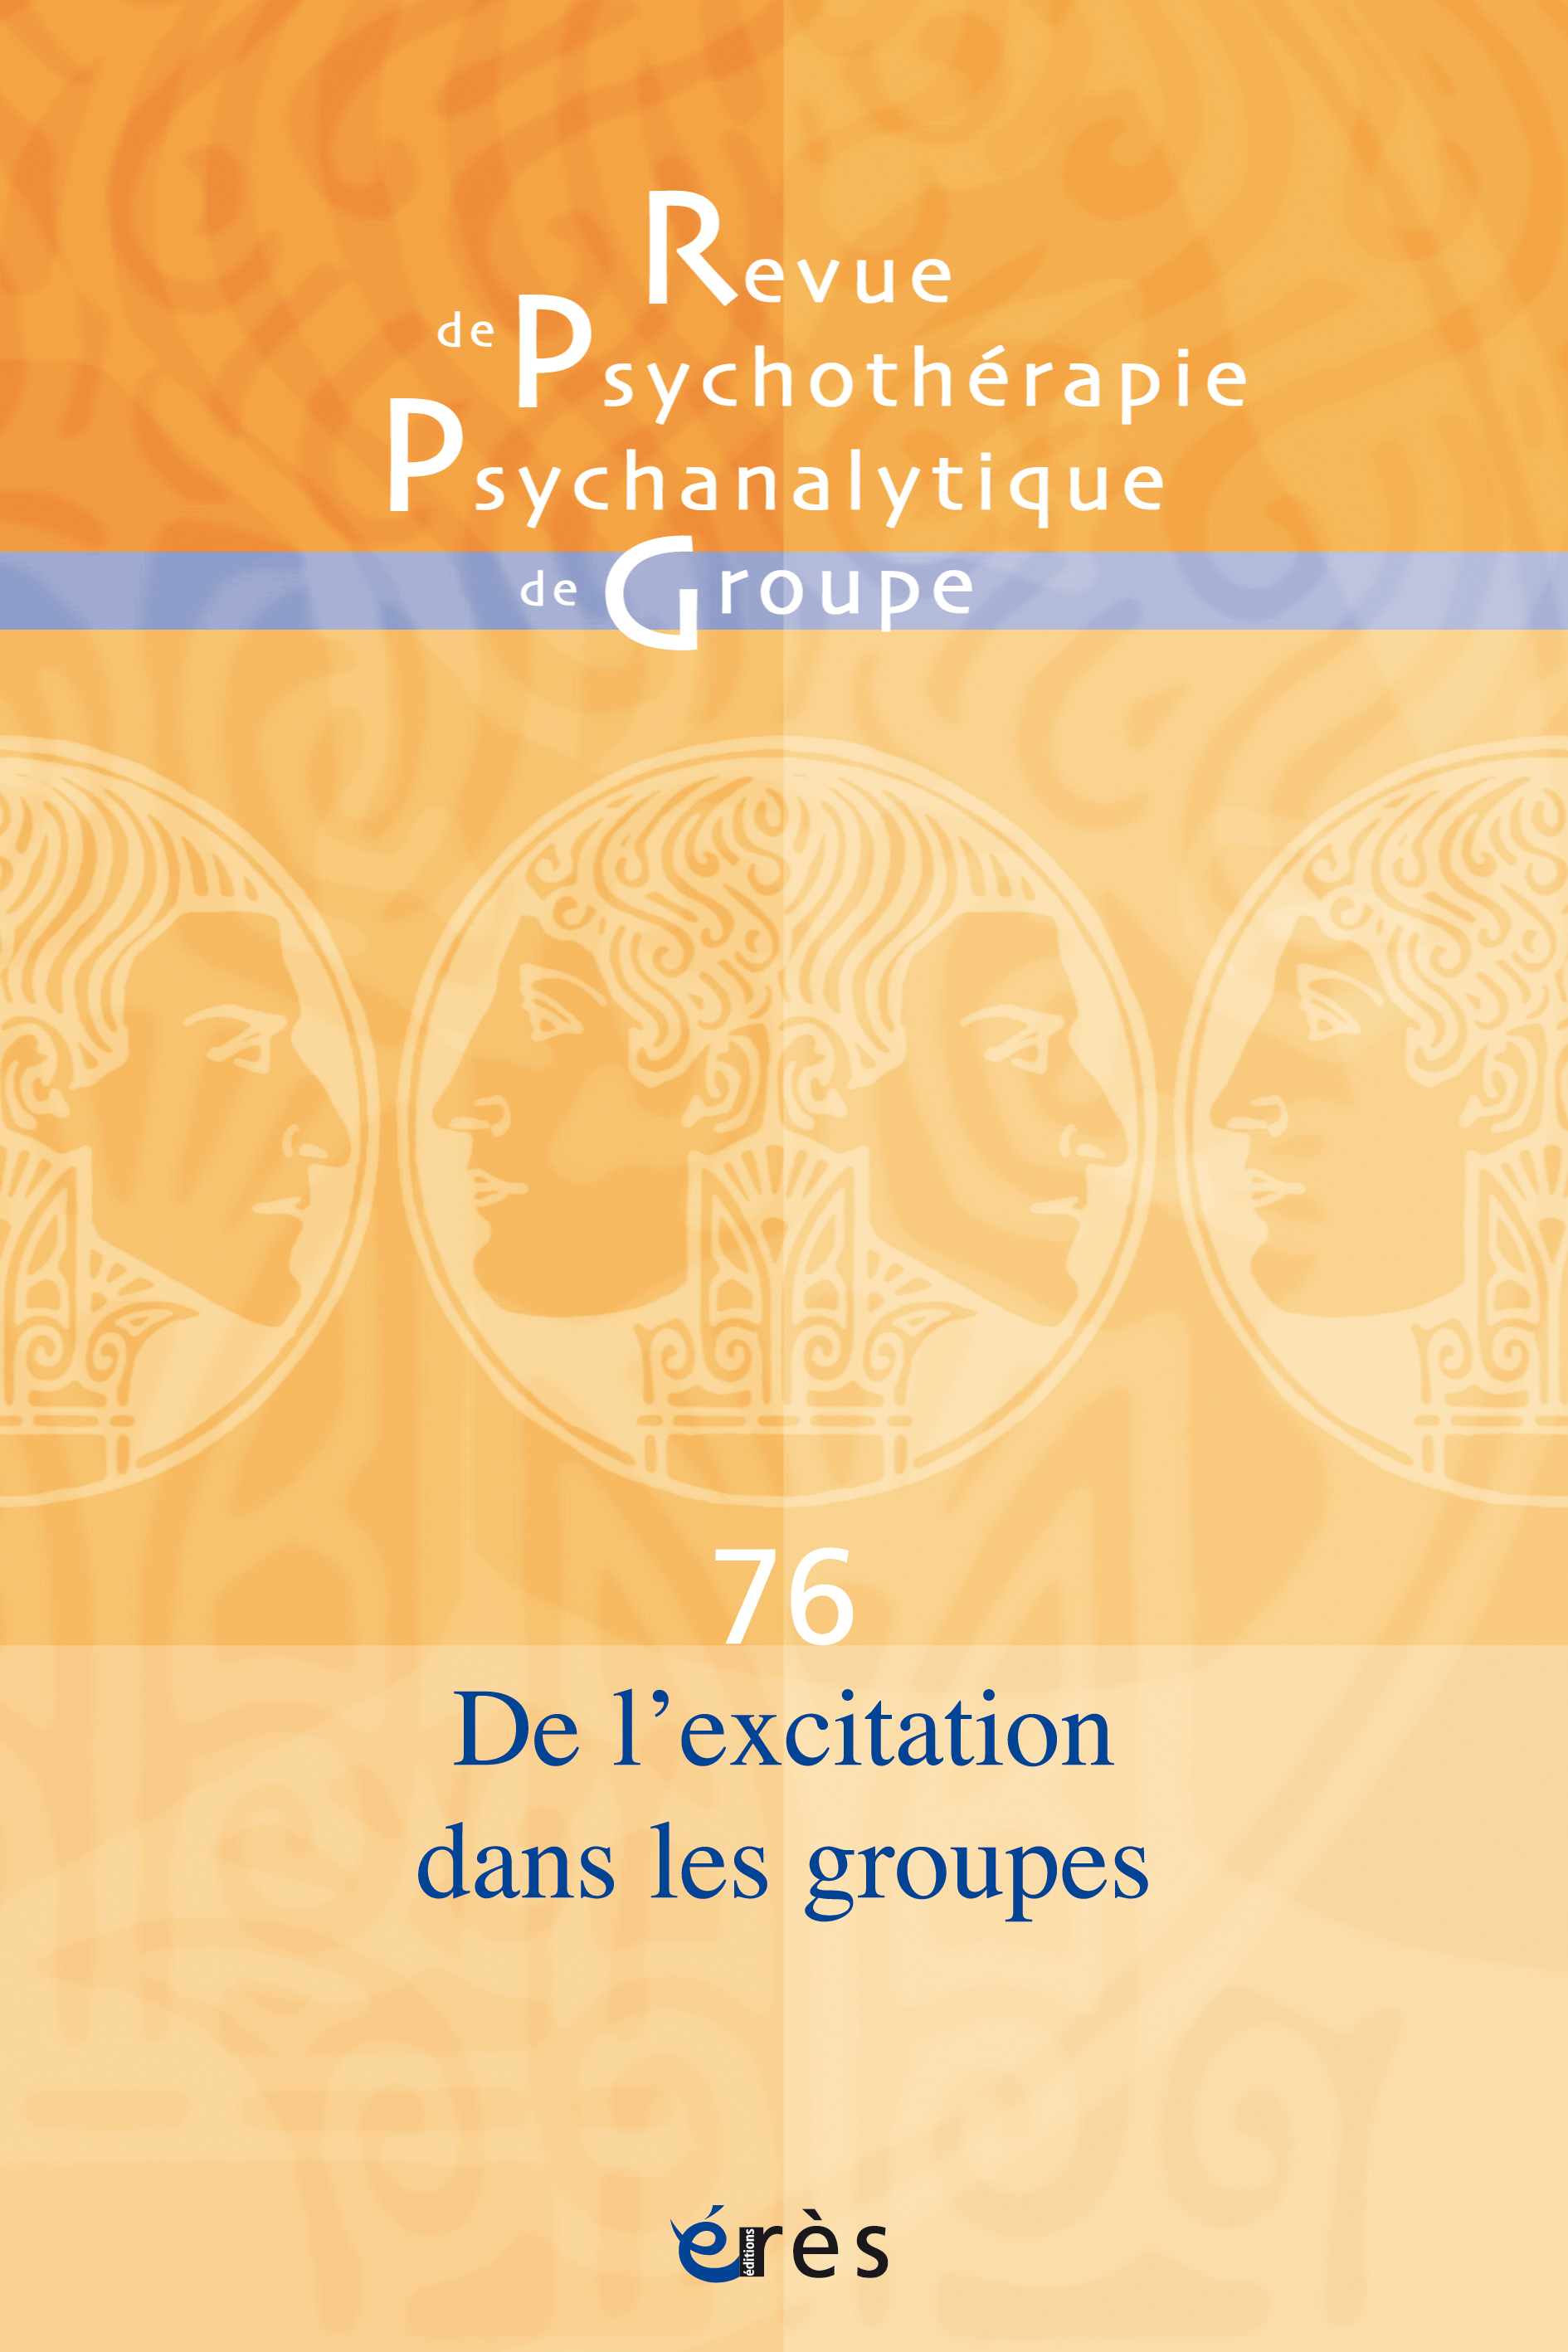 Revue de psychothérapie psychanalytique de groupe. Dossier « De l’excitation dans les groupes »